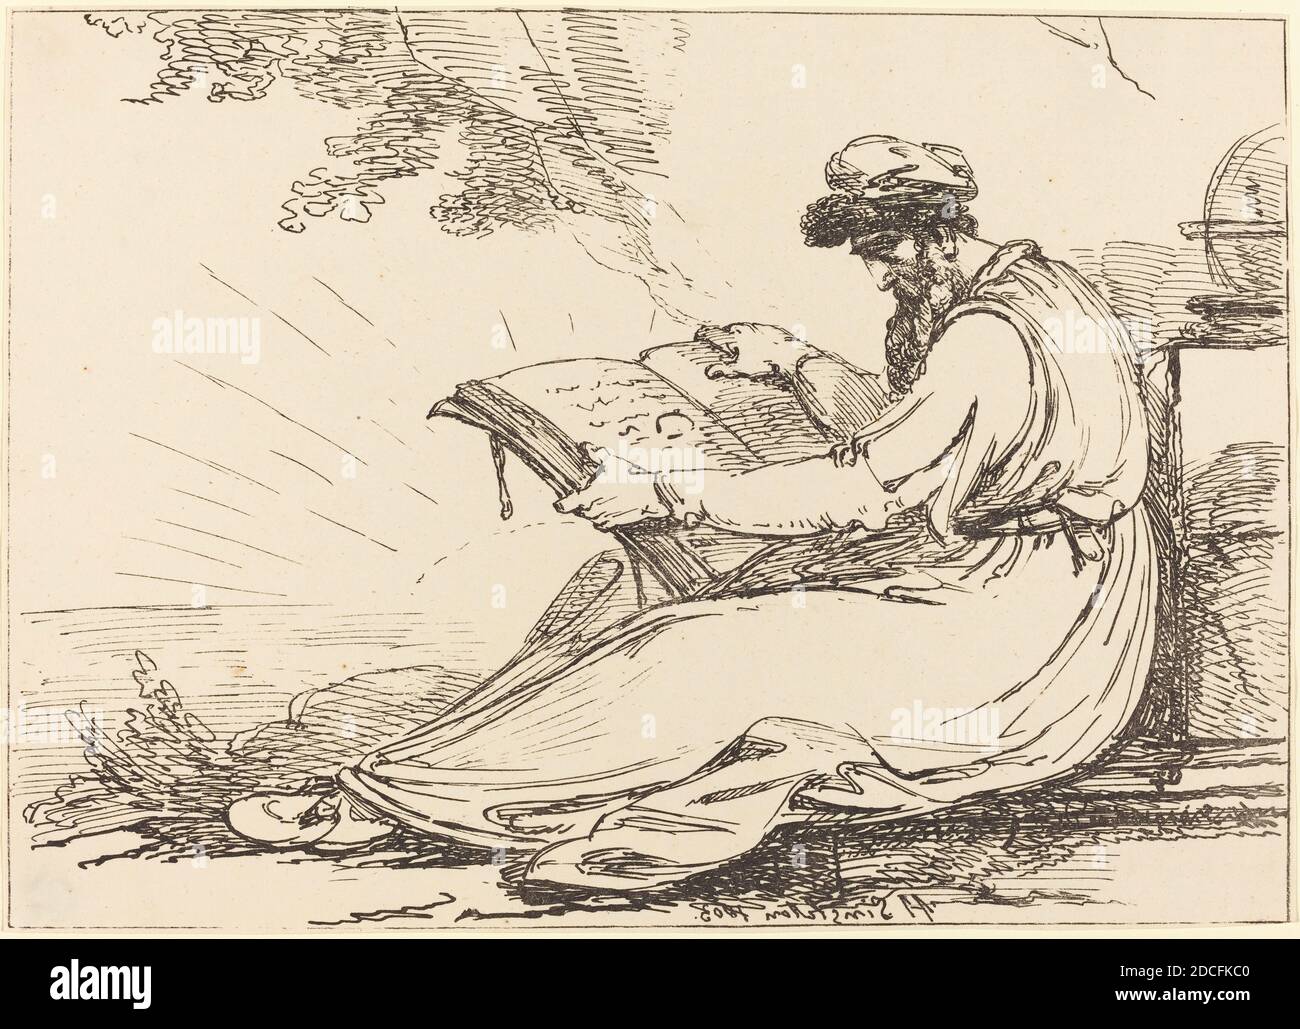 Henry Singleton, (artista), britannico, 1766 - 1839, orientale con la barba, leggendo un libro, esemplari di poliautografia, (serie), 1803, litografia a penna e a tusche Foto Stock